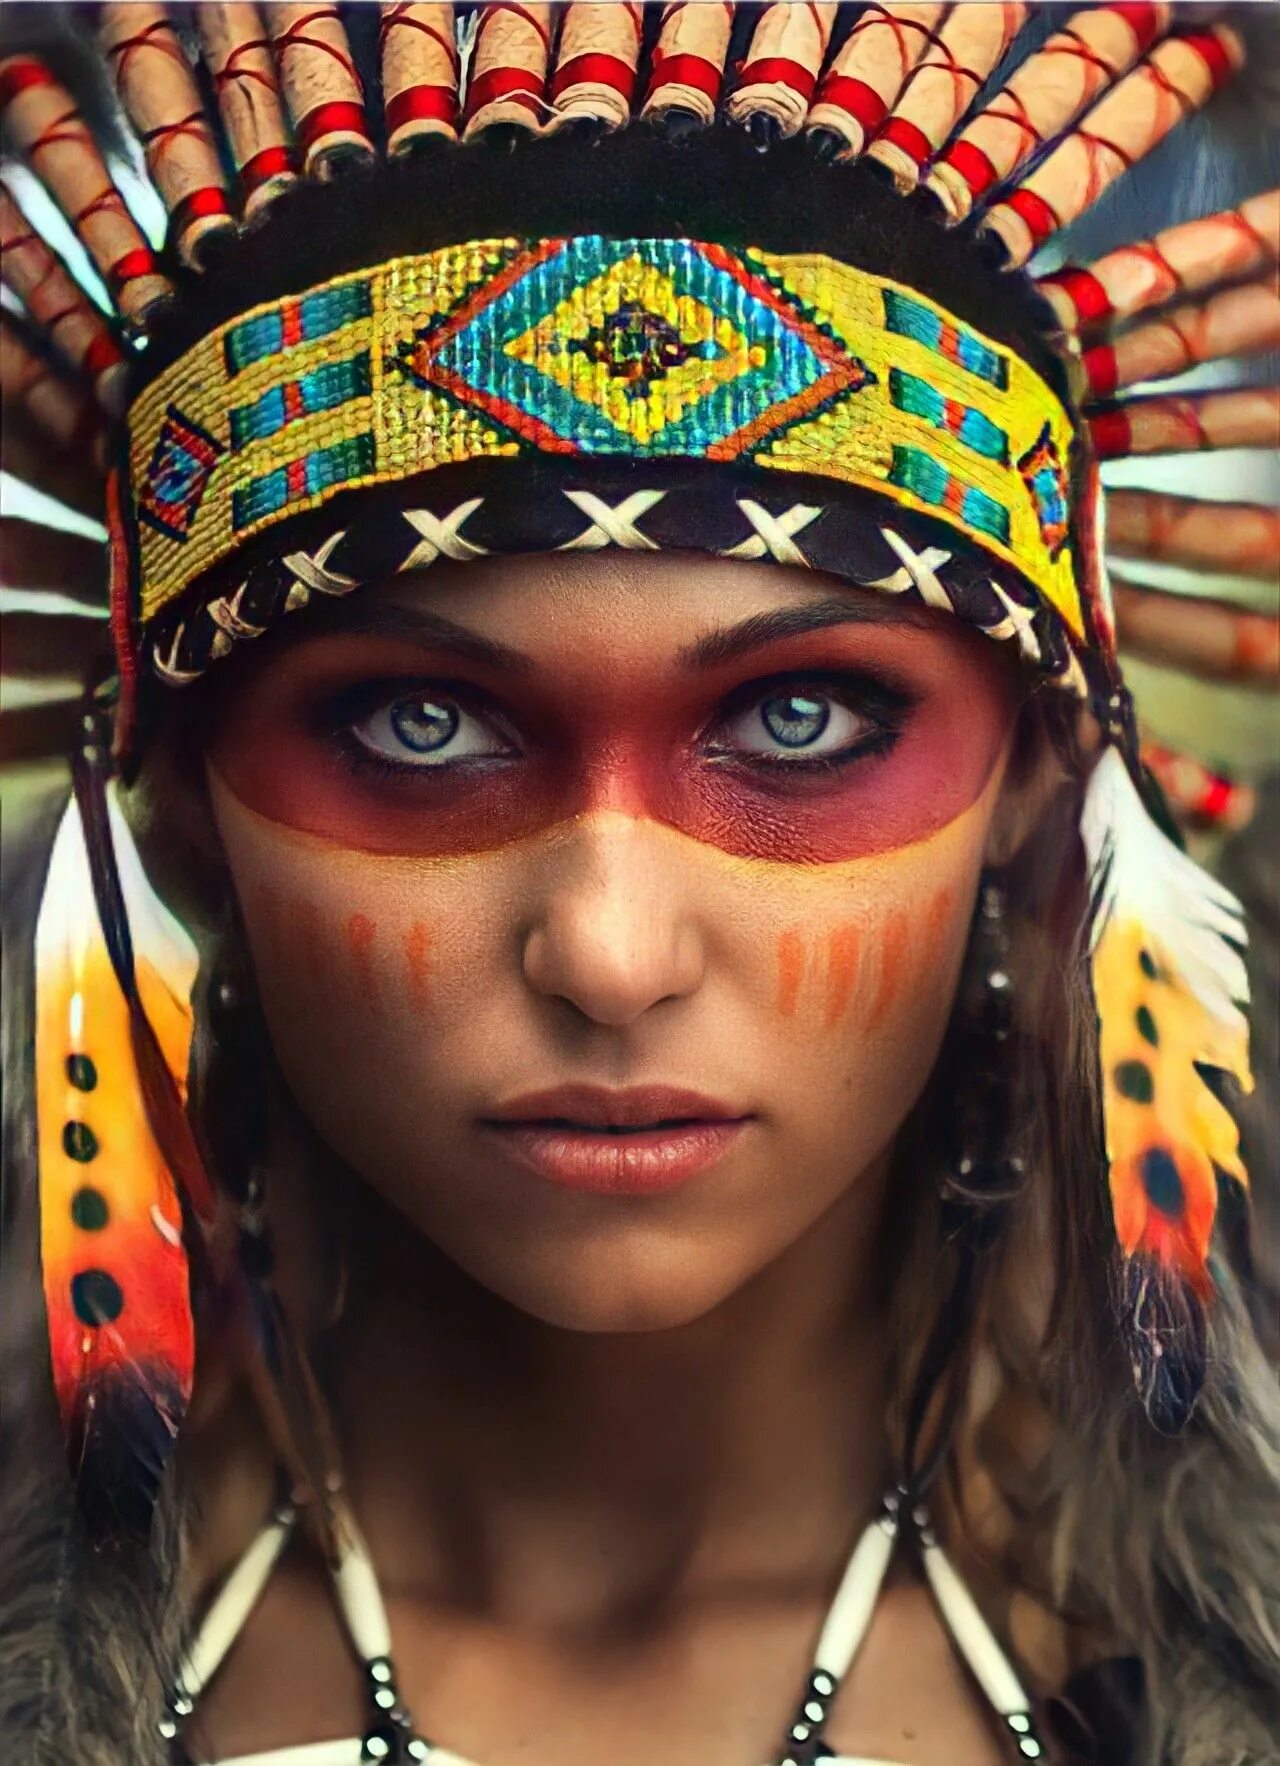 Этнический взгляд. Девушка с перьями на голове. Раскрас индейцев на лице. Индейцы девушки. Грим индейца.